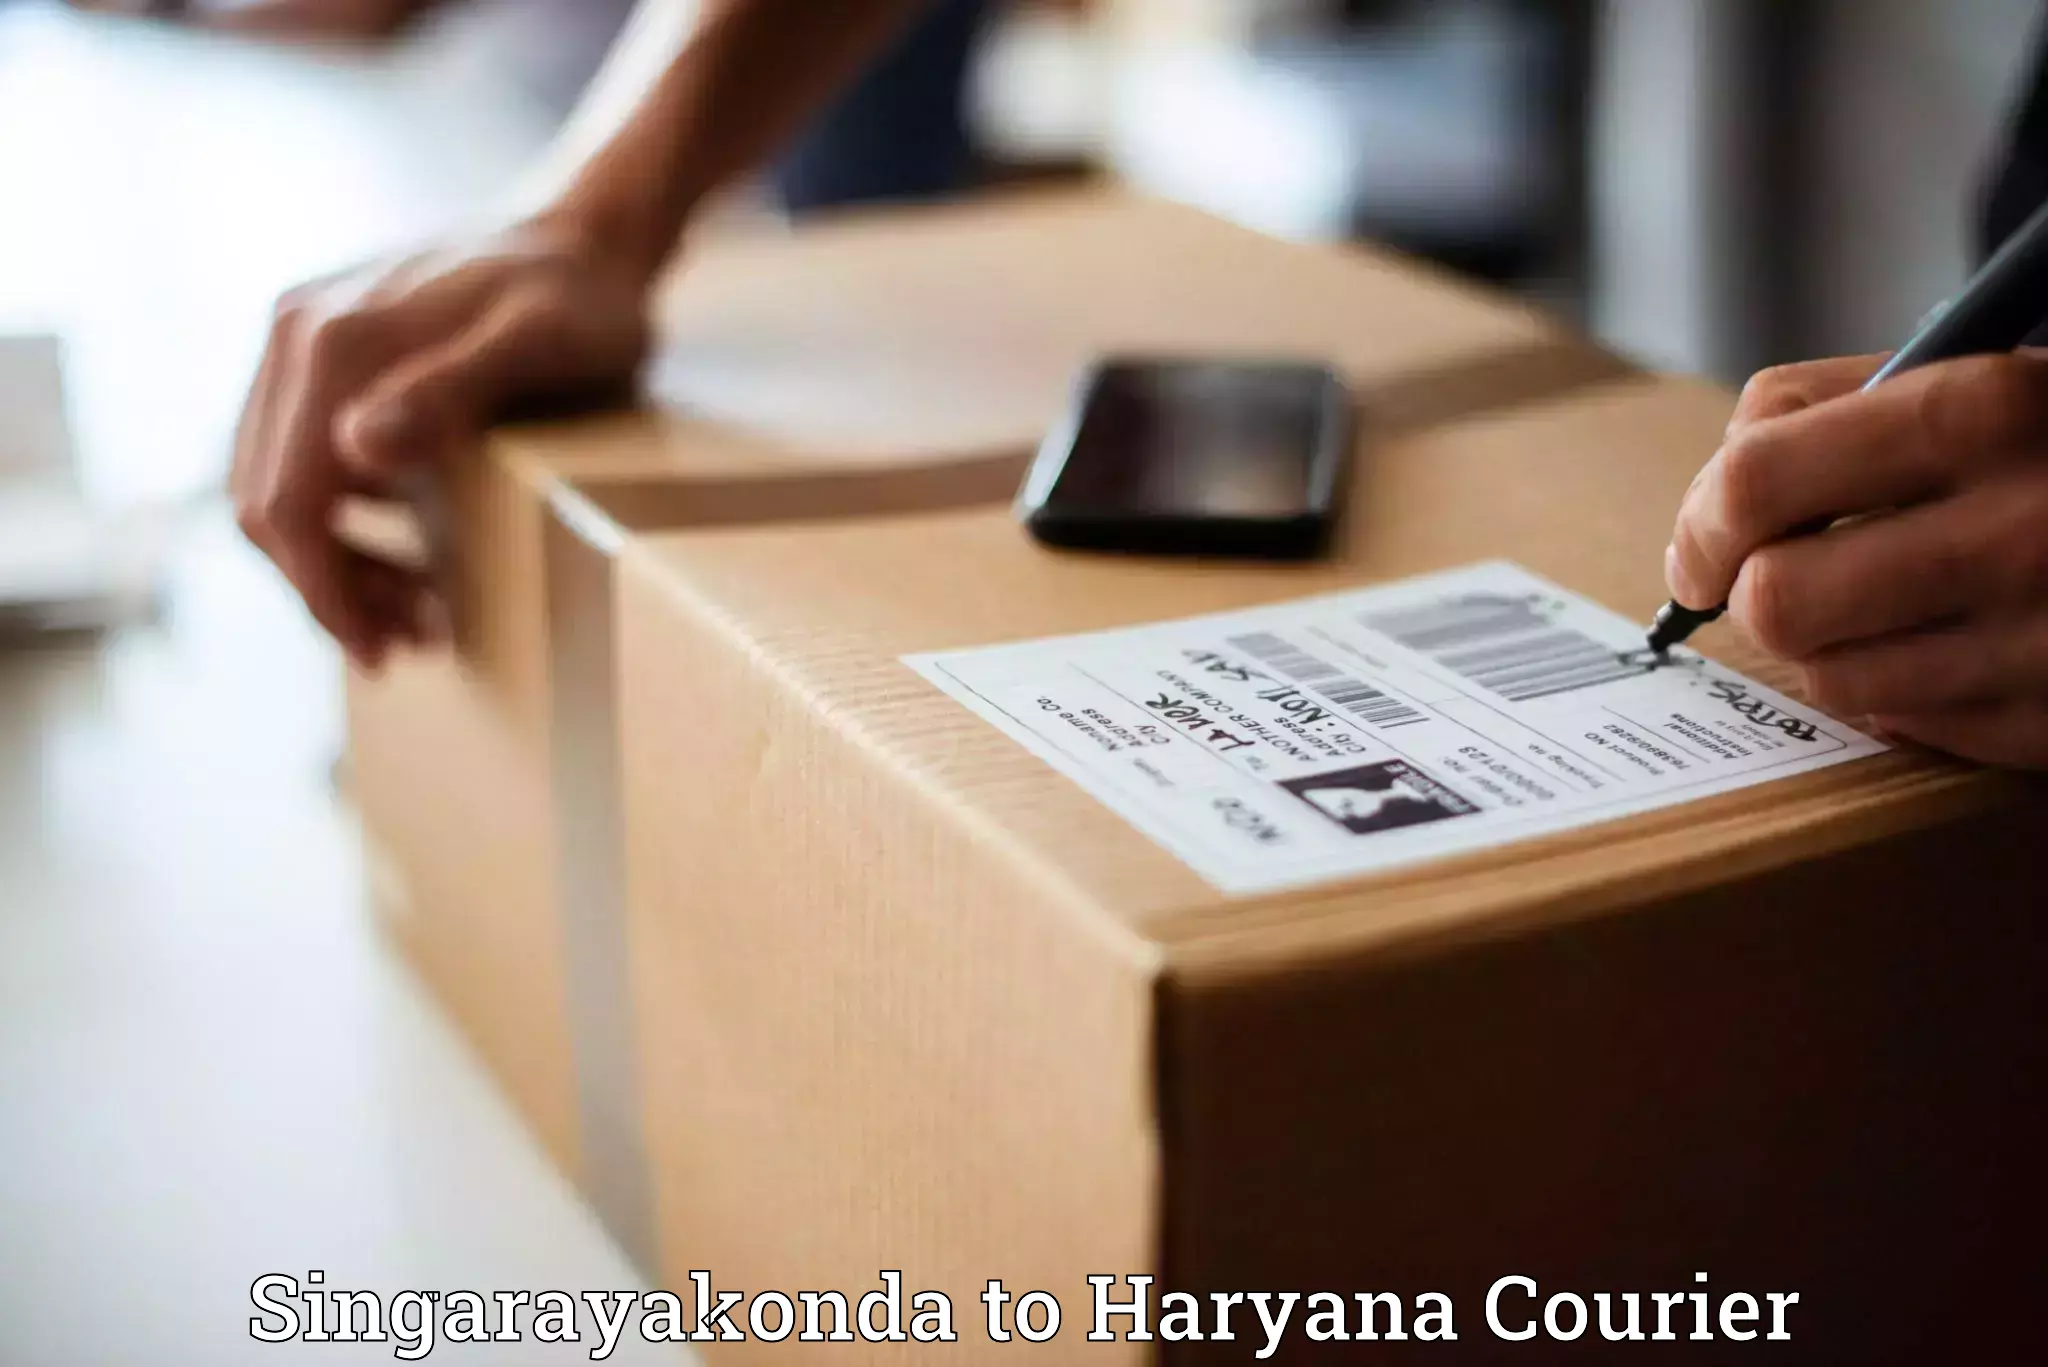 Professional courier handling Singarayakonda to Haryana